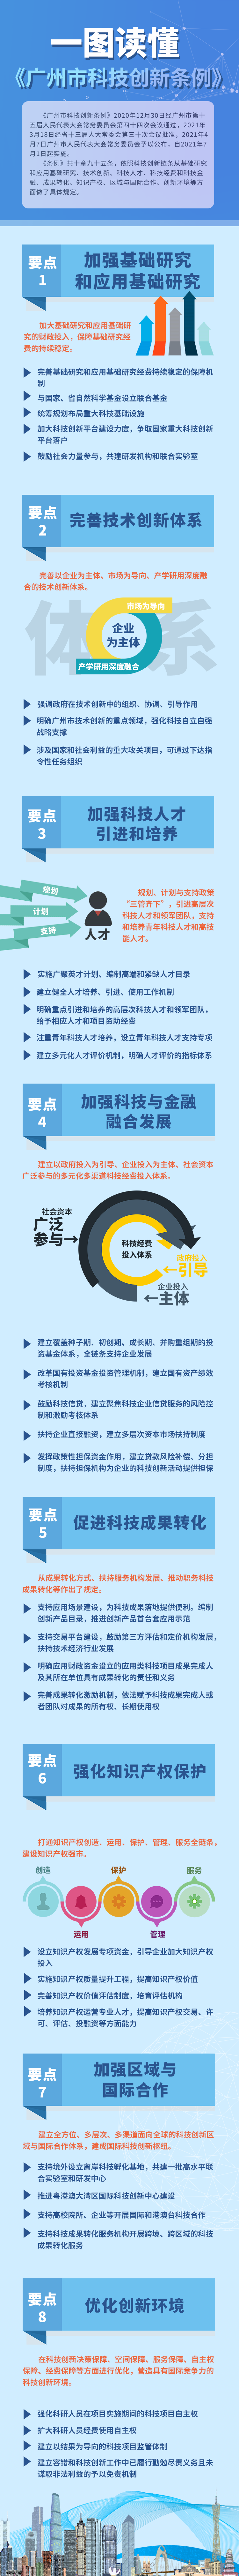 一图读懂广州科技创新条例.png